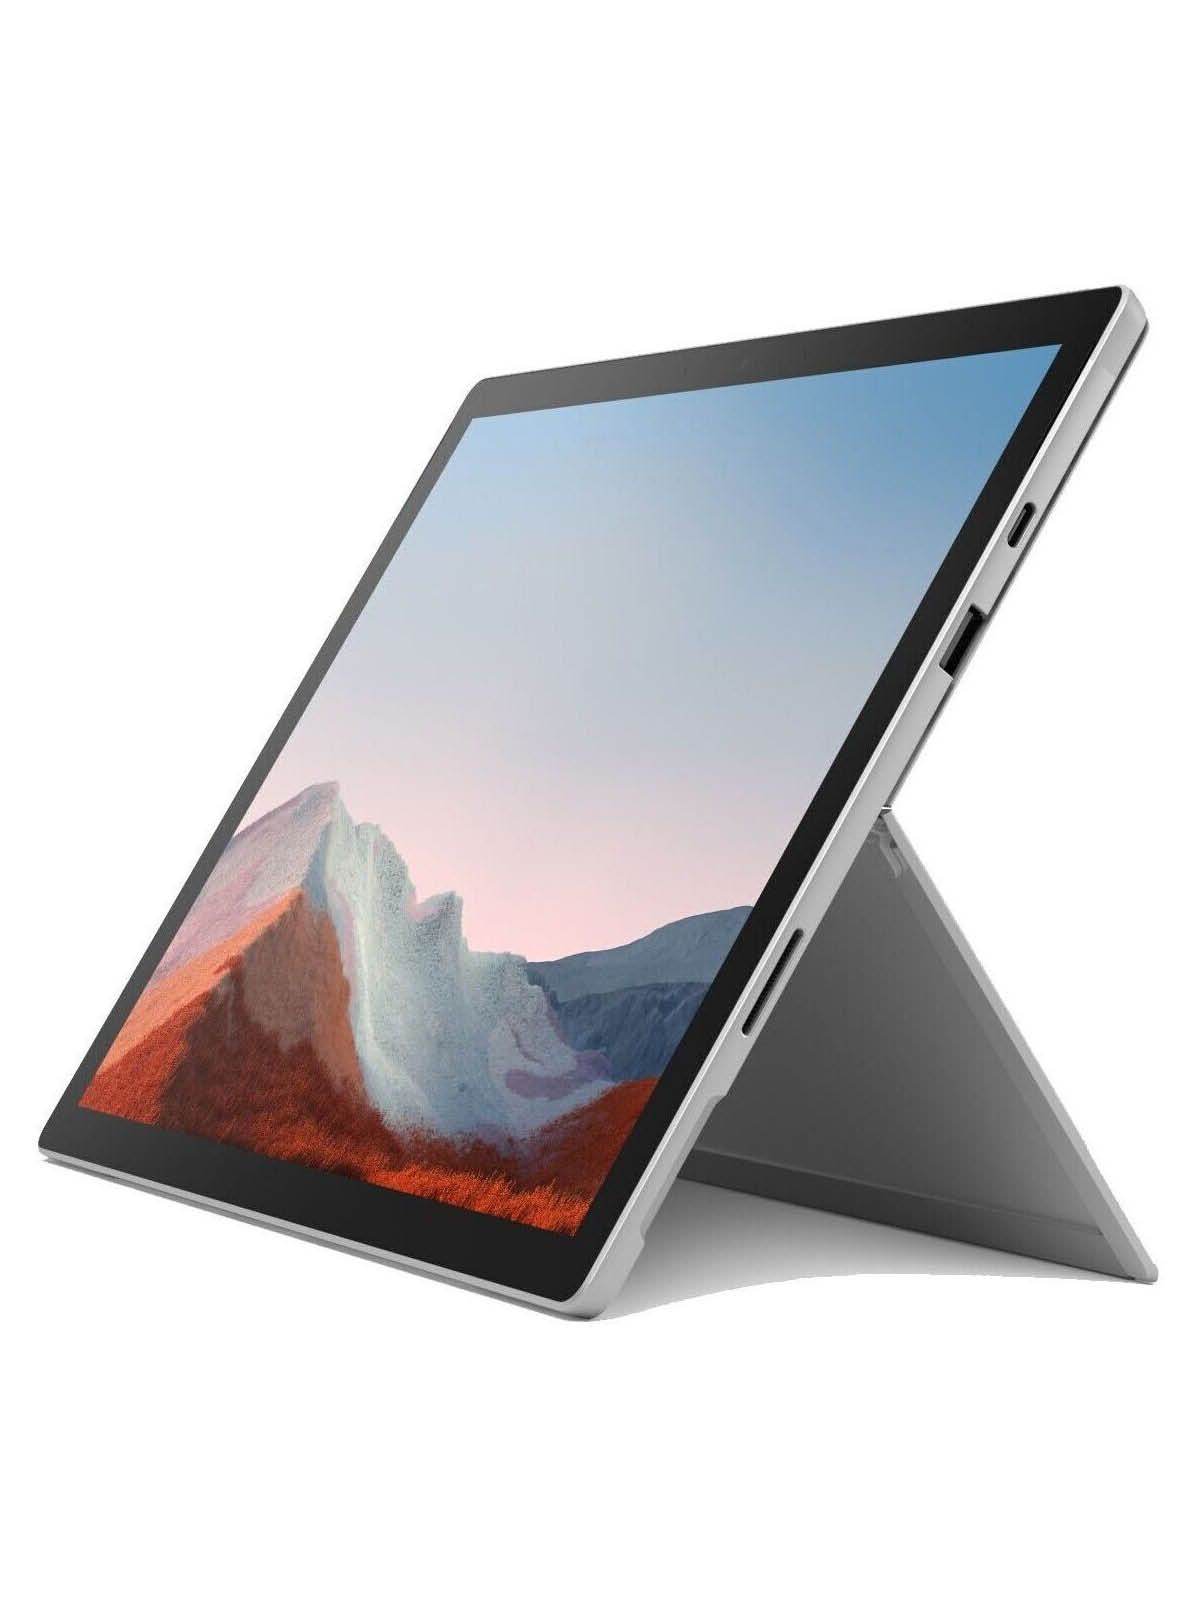 Microsoft Surface Pro 7 Plus Gerätehalter